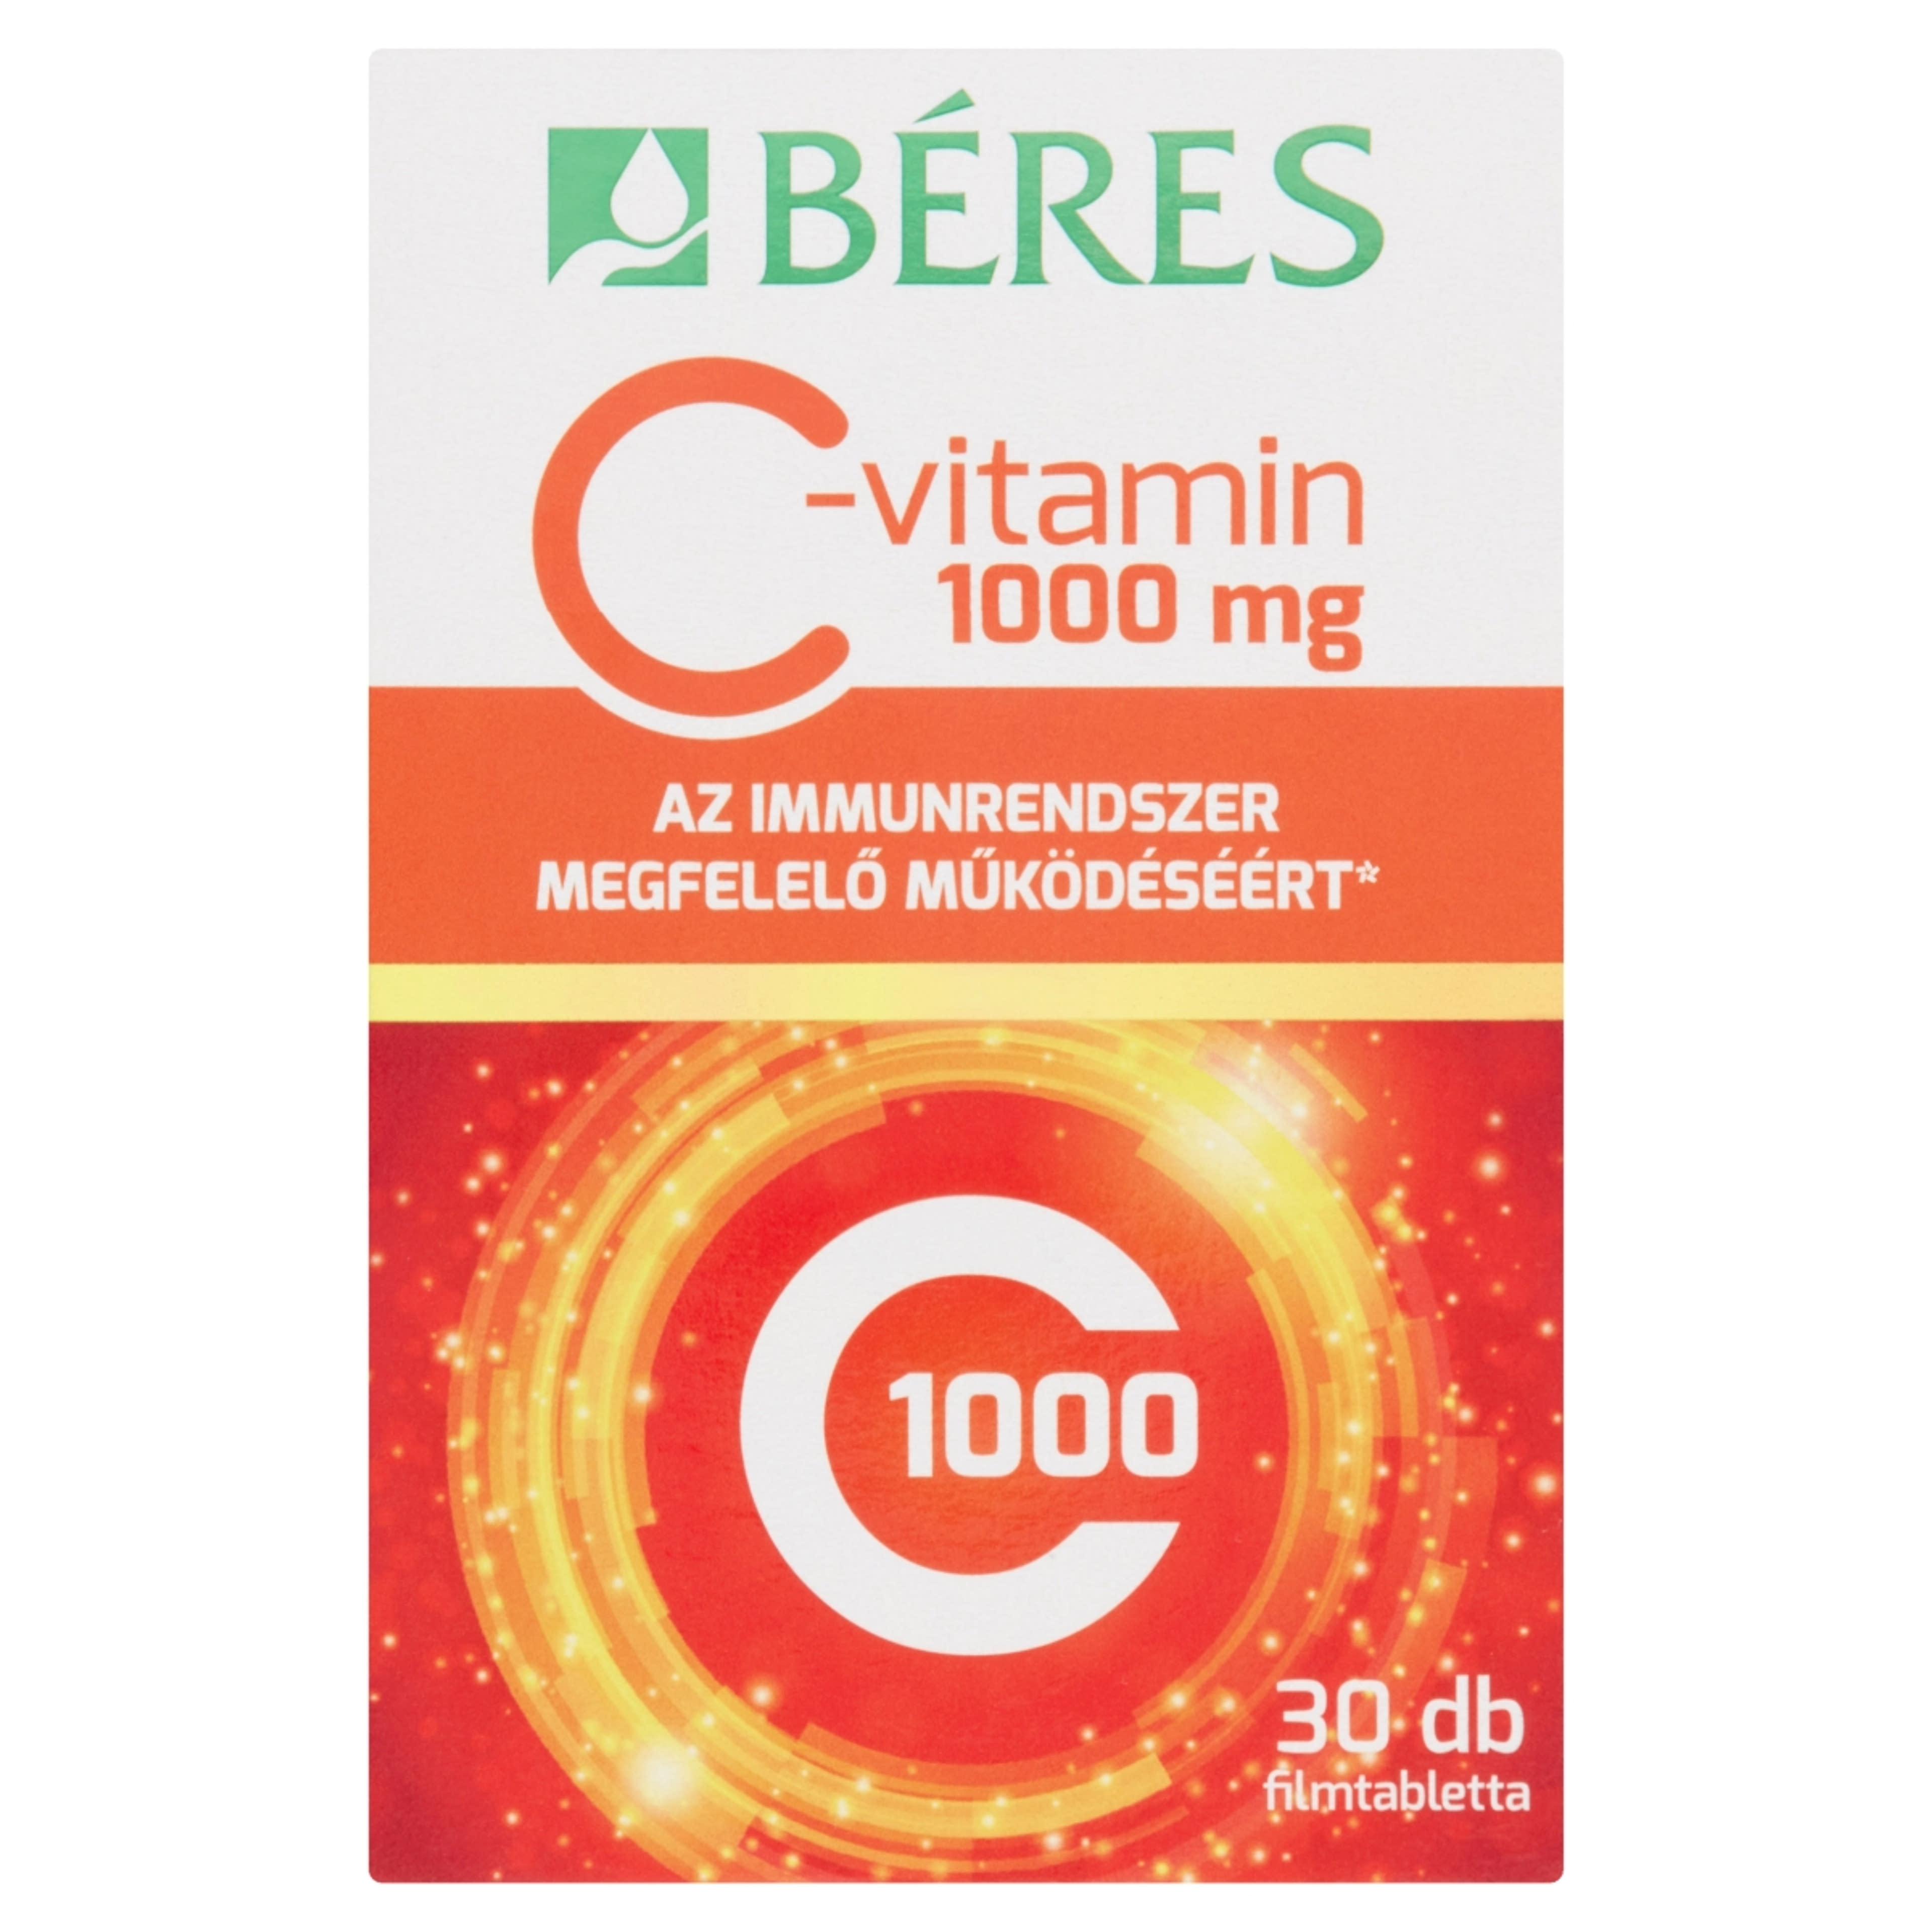 Beres C-vitamin 1000 mg filmtabletta - 30 db-1